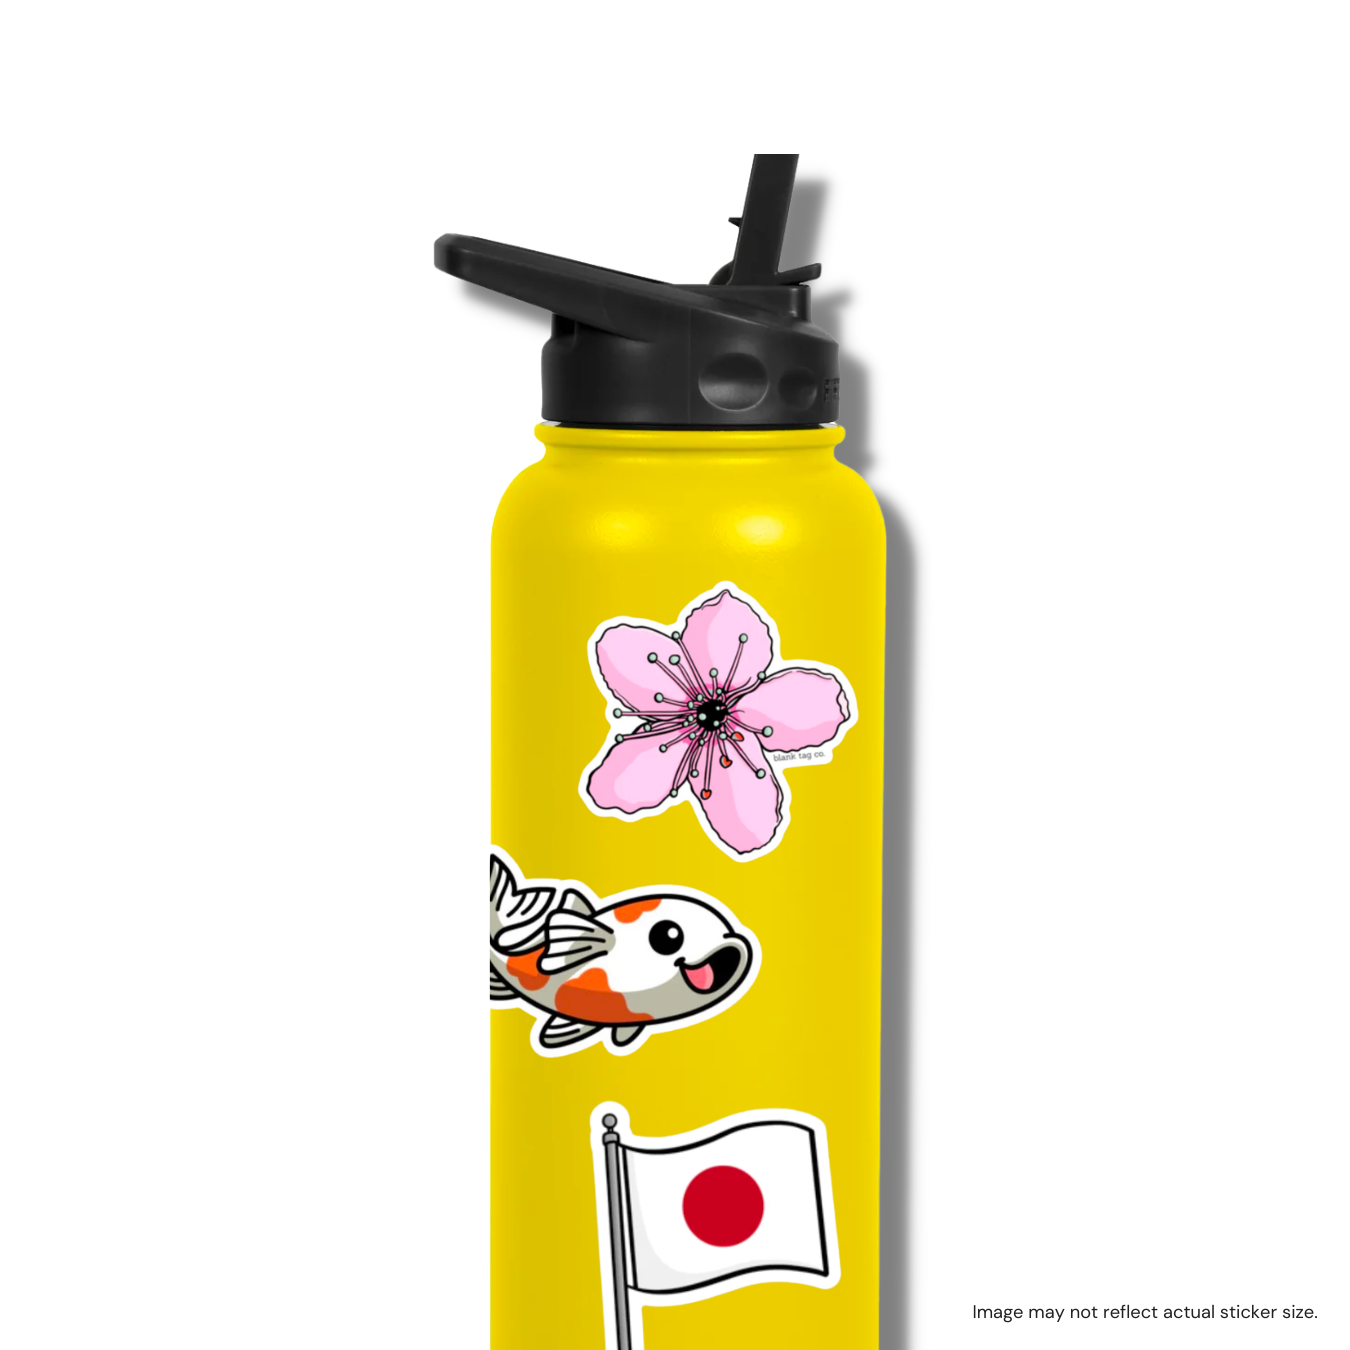 The Cherry Blossom Sticker